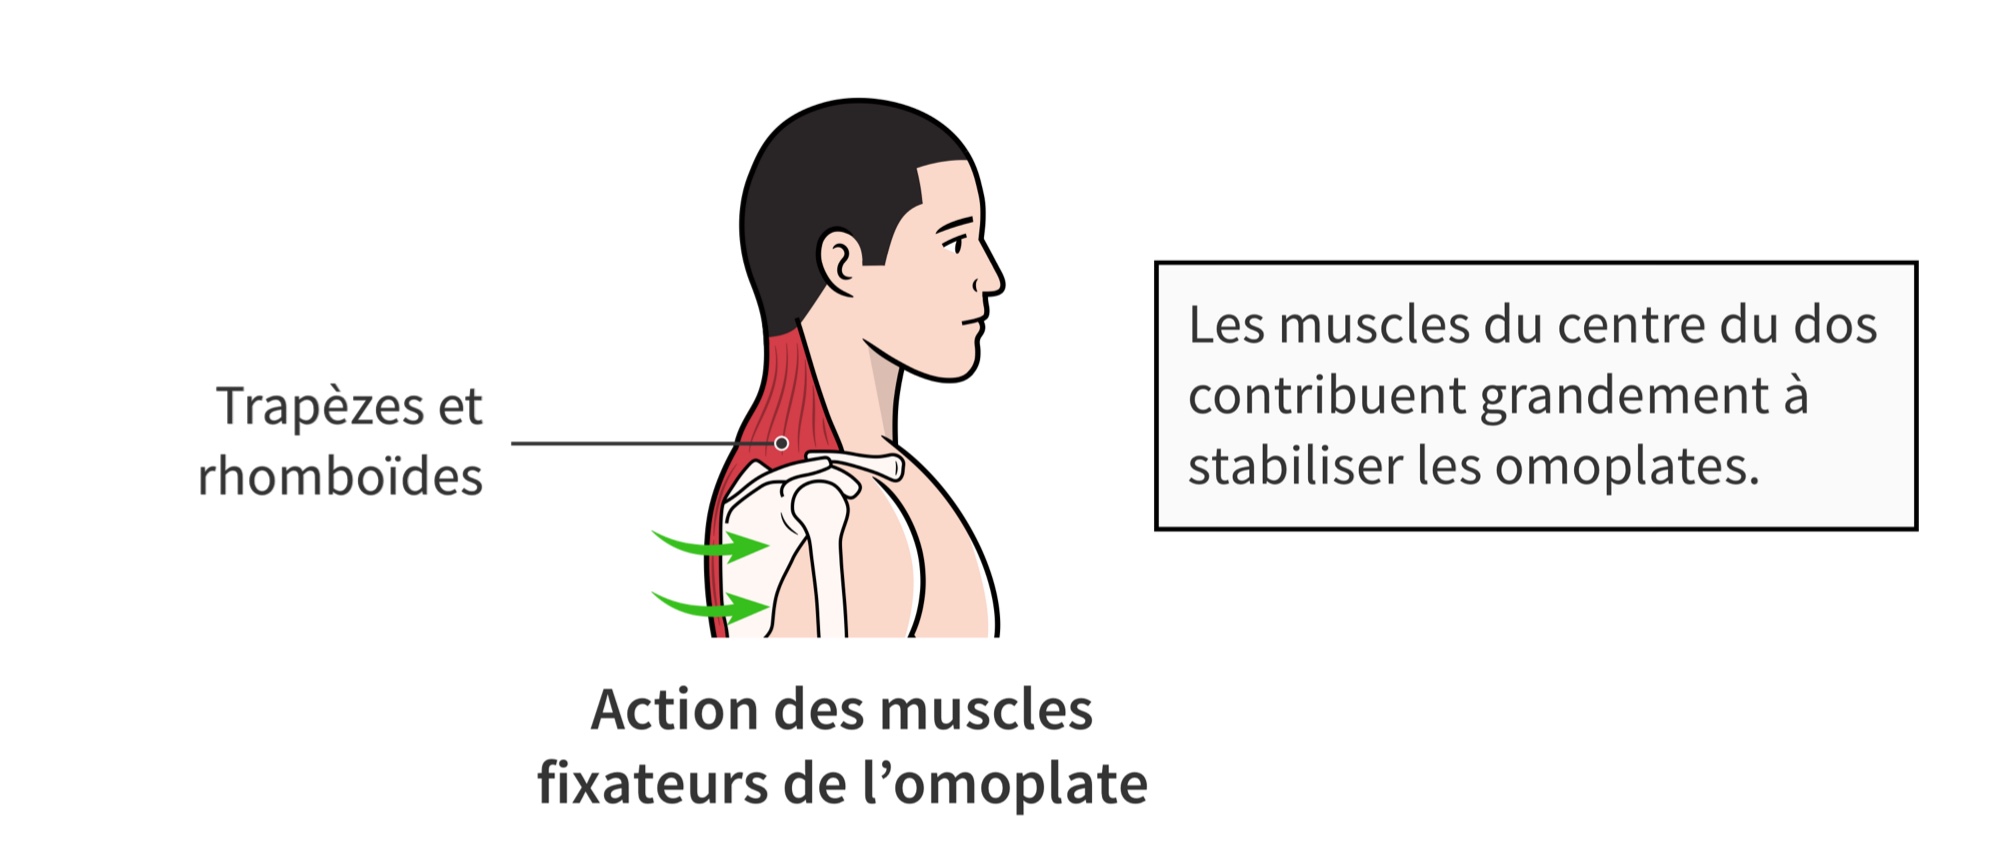 Action des muscles fixateurs de l’omoplate